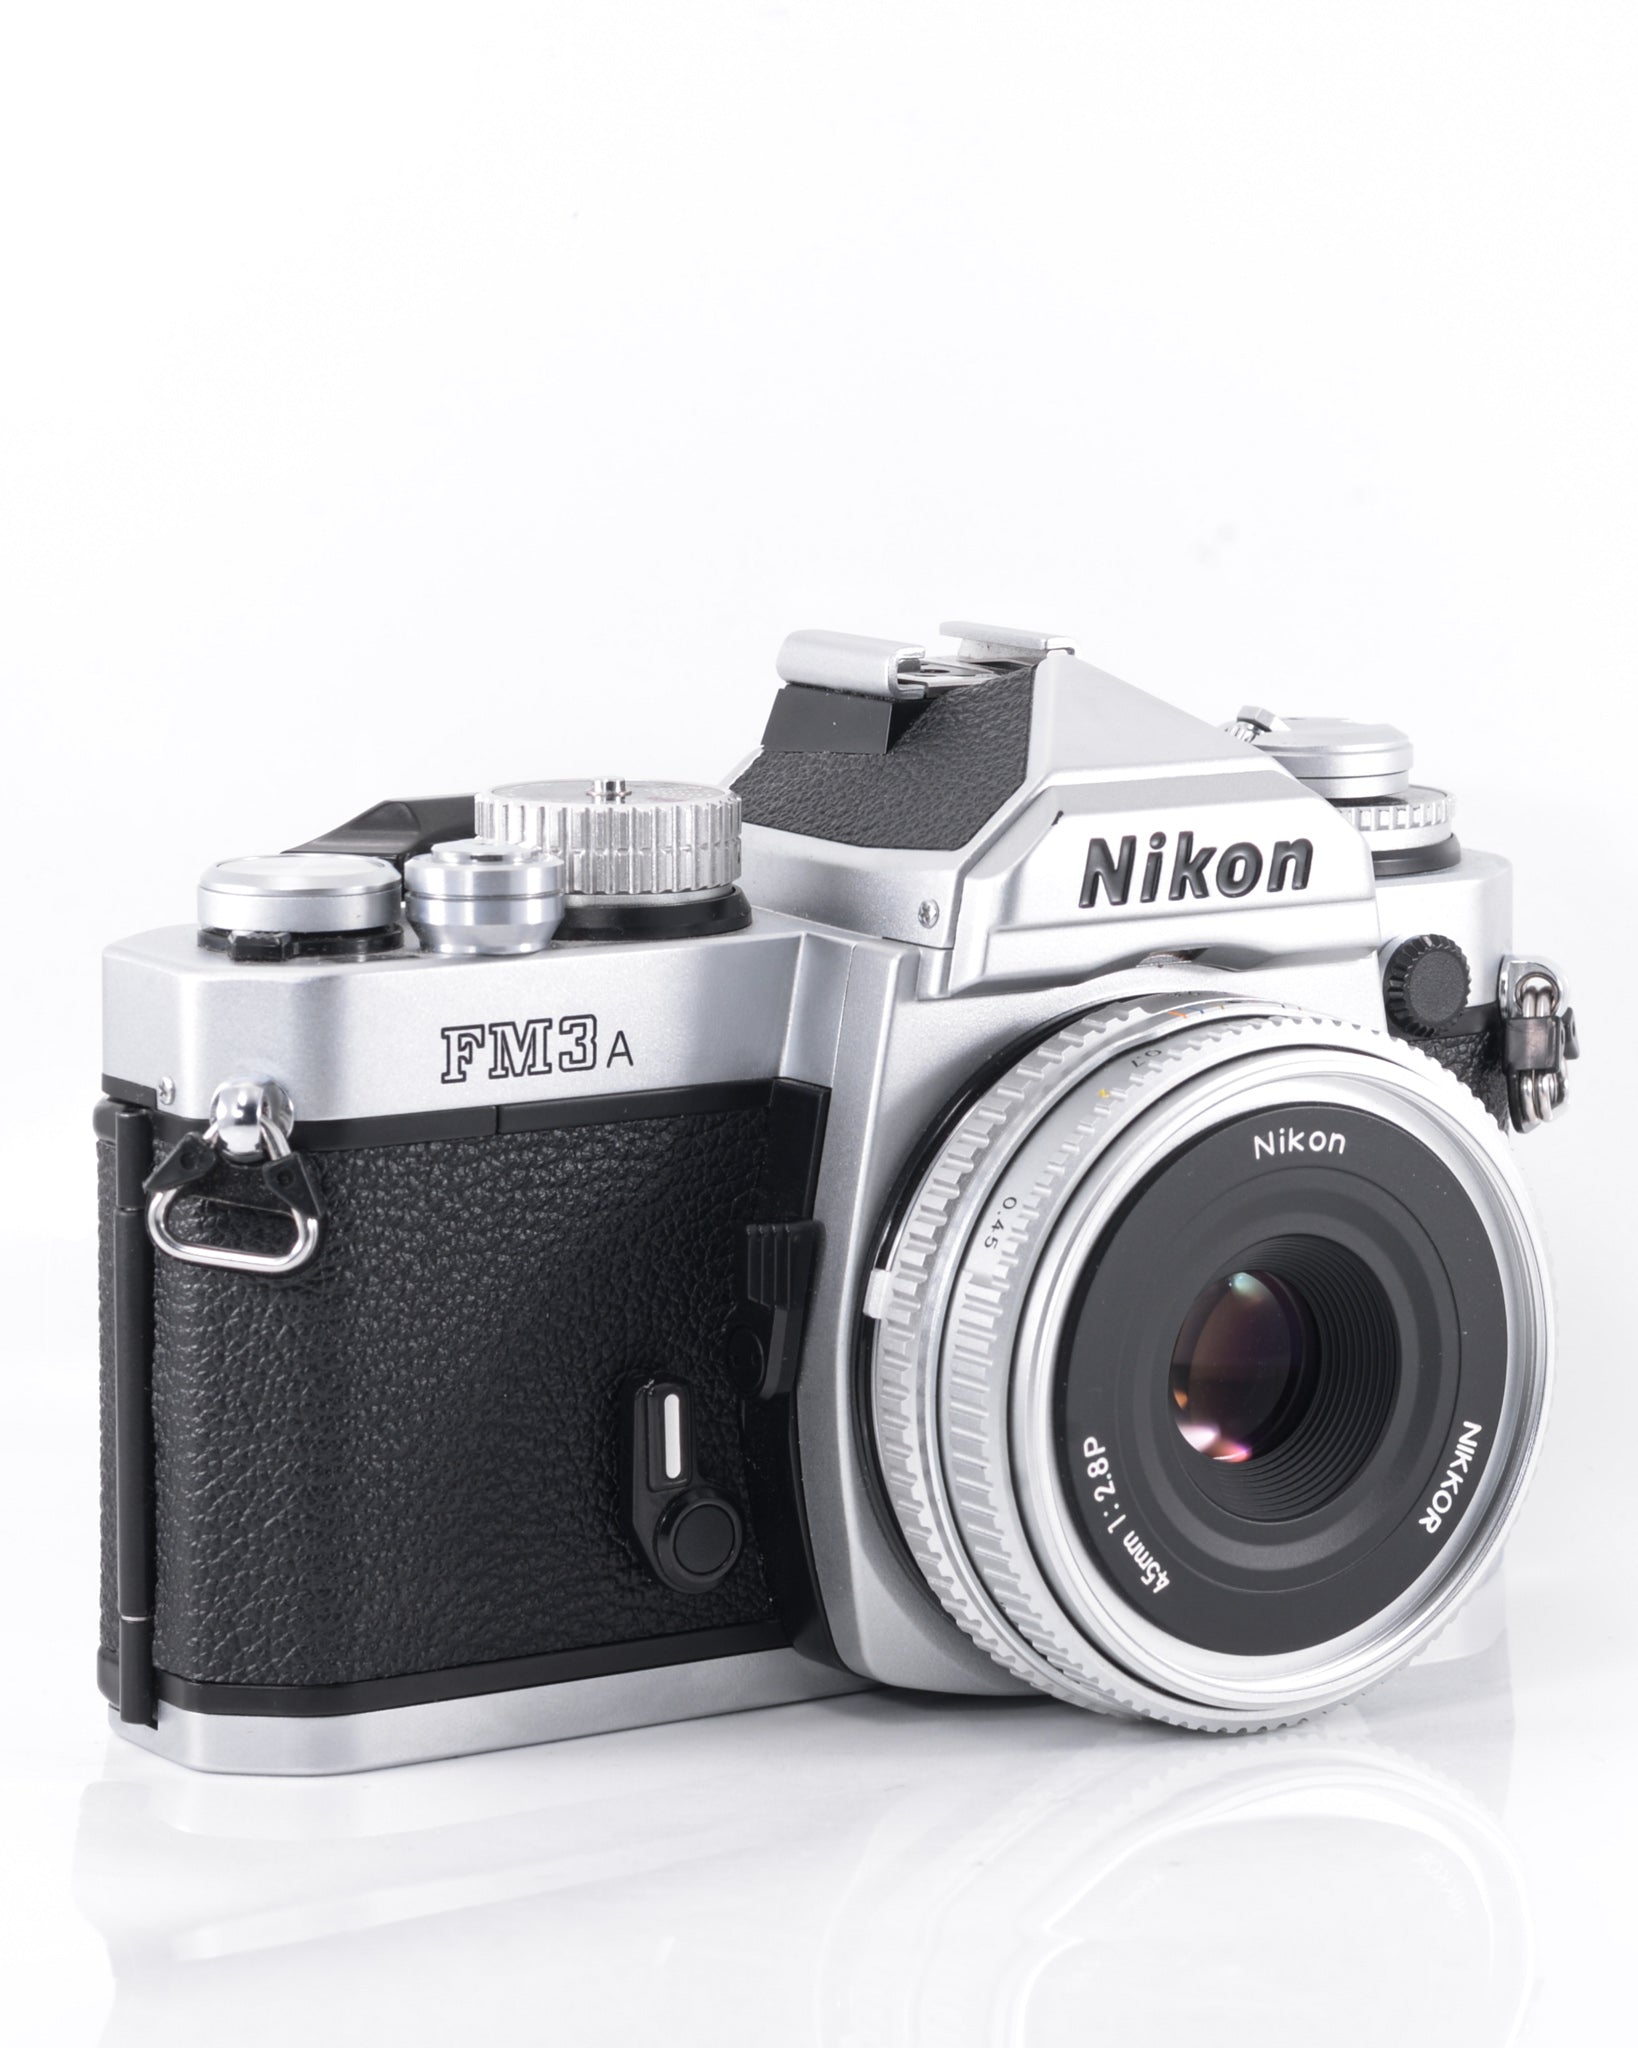 28,500円Nikon FM3A + Nikkor 45mm F2.8 P